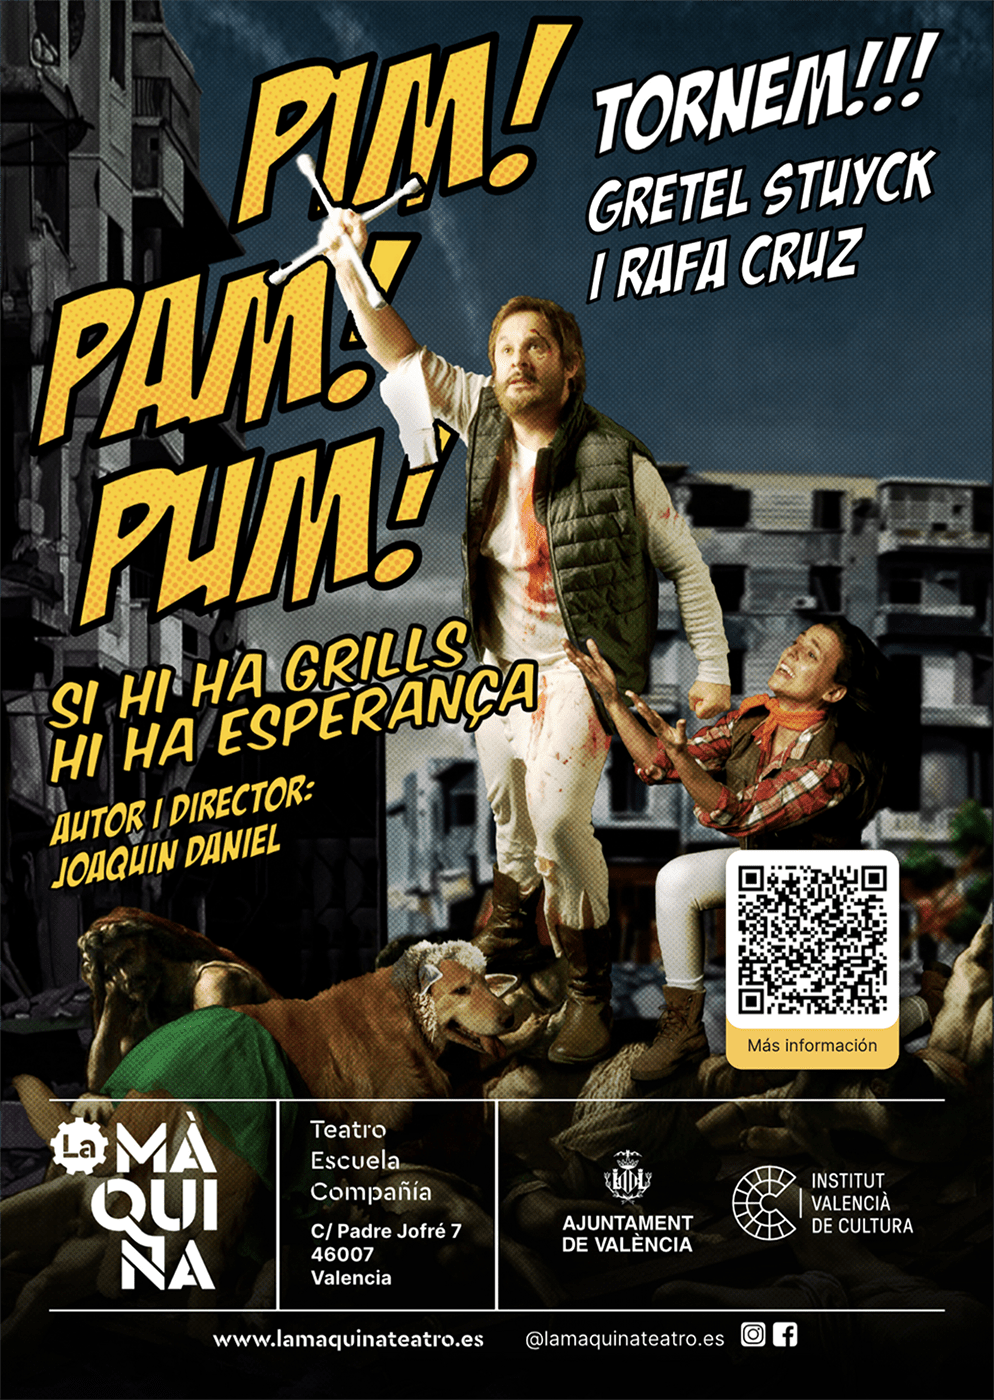 La Màquina teatro estrena “PIM! PAM! PUM!: si hi ha grills hi ha esperança” en valenciano